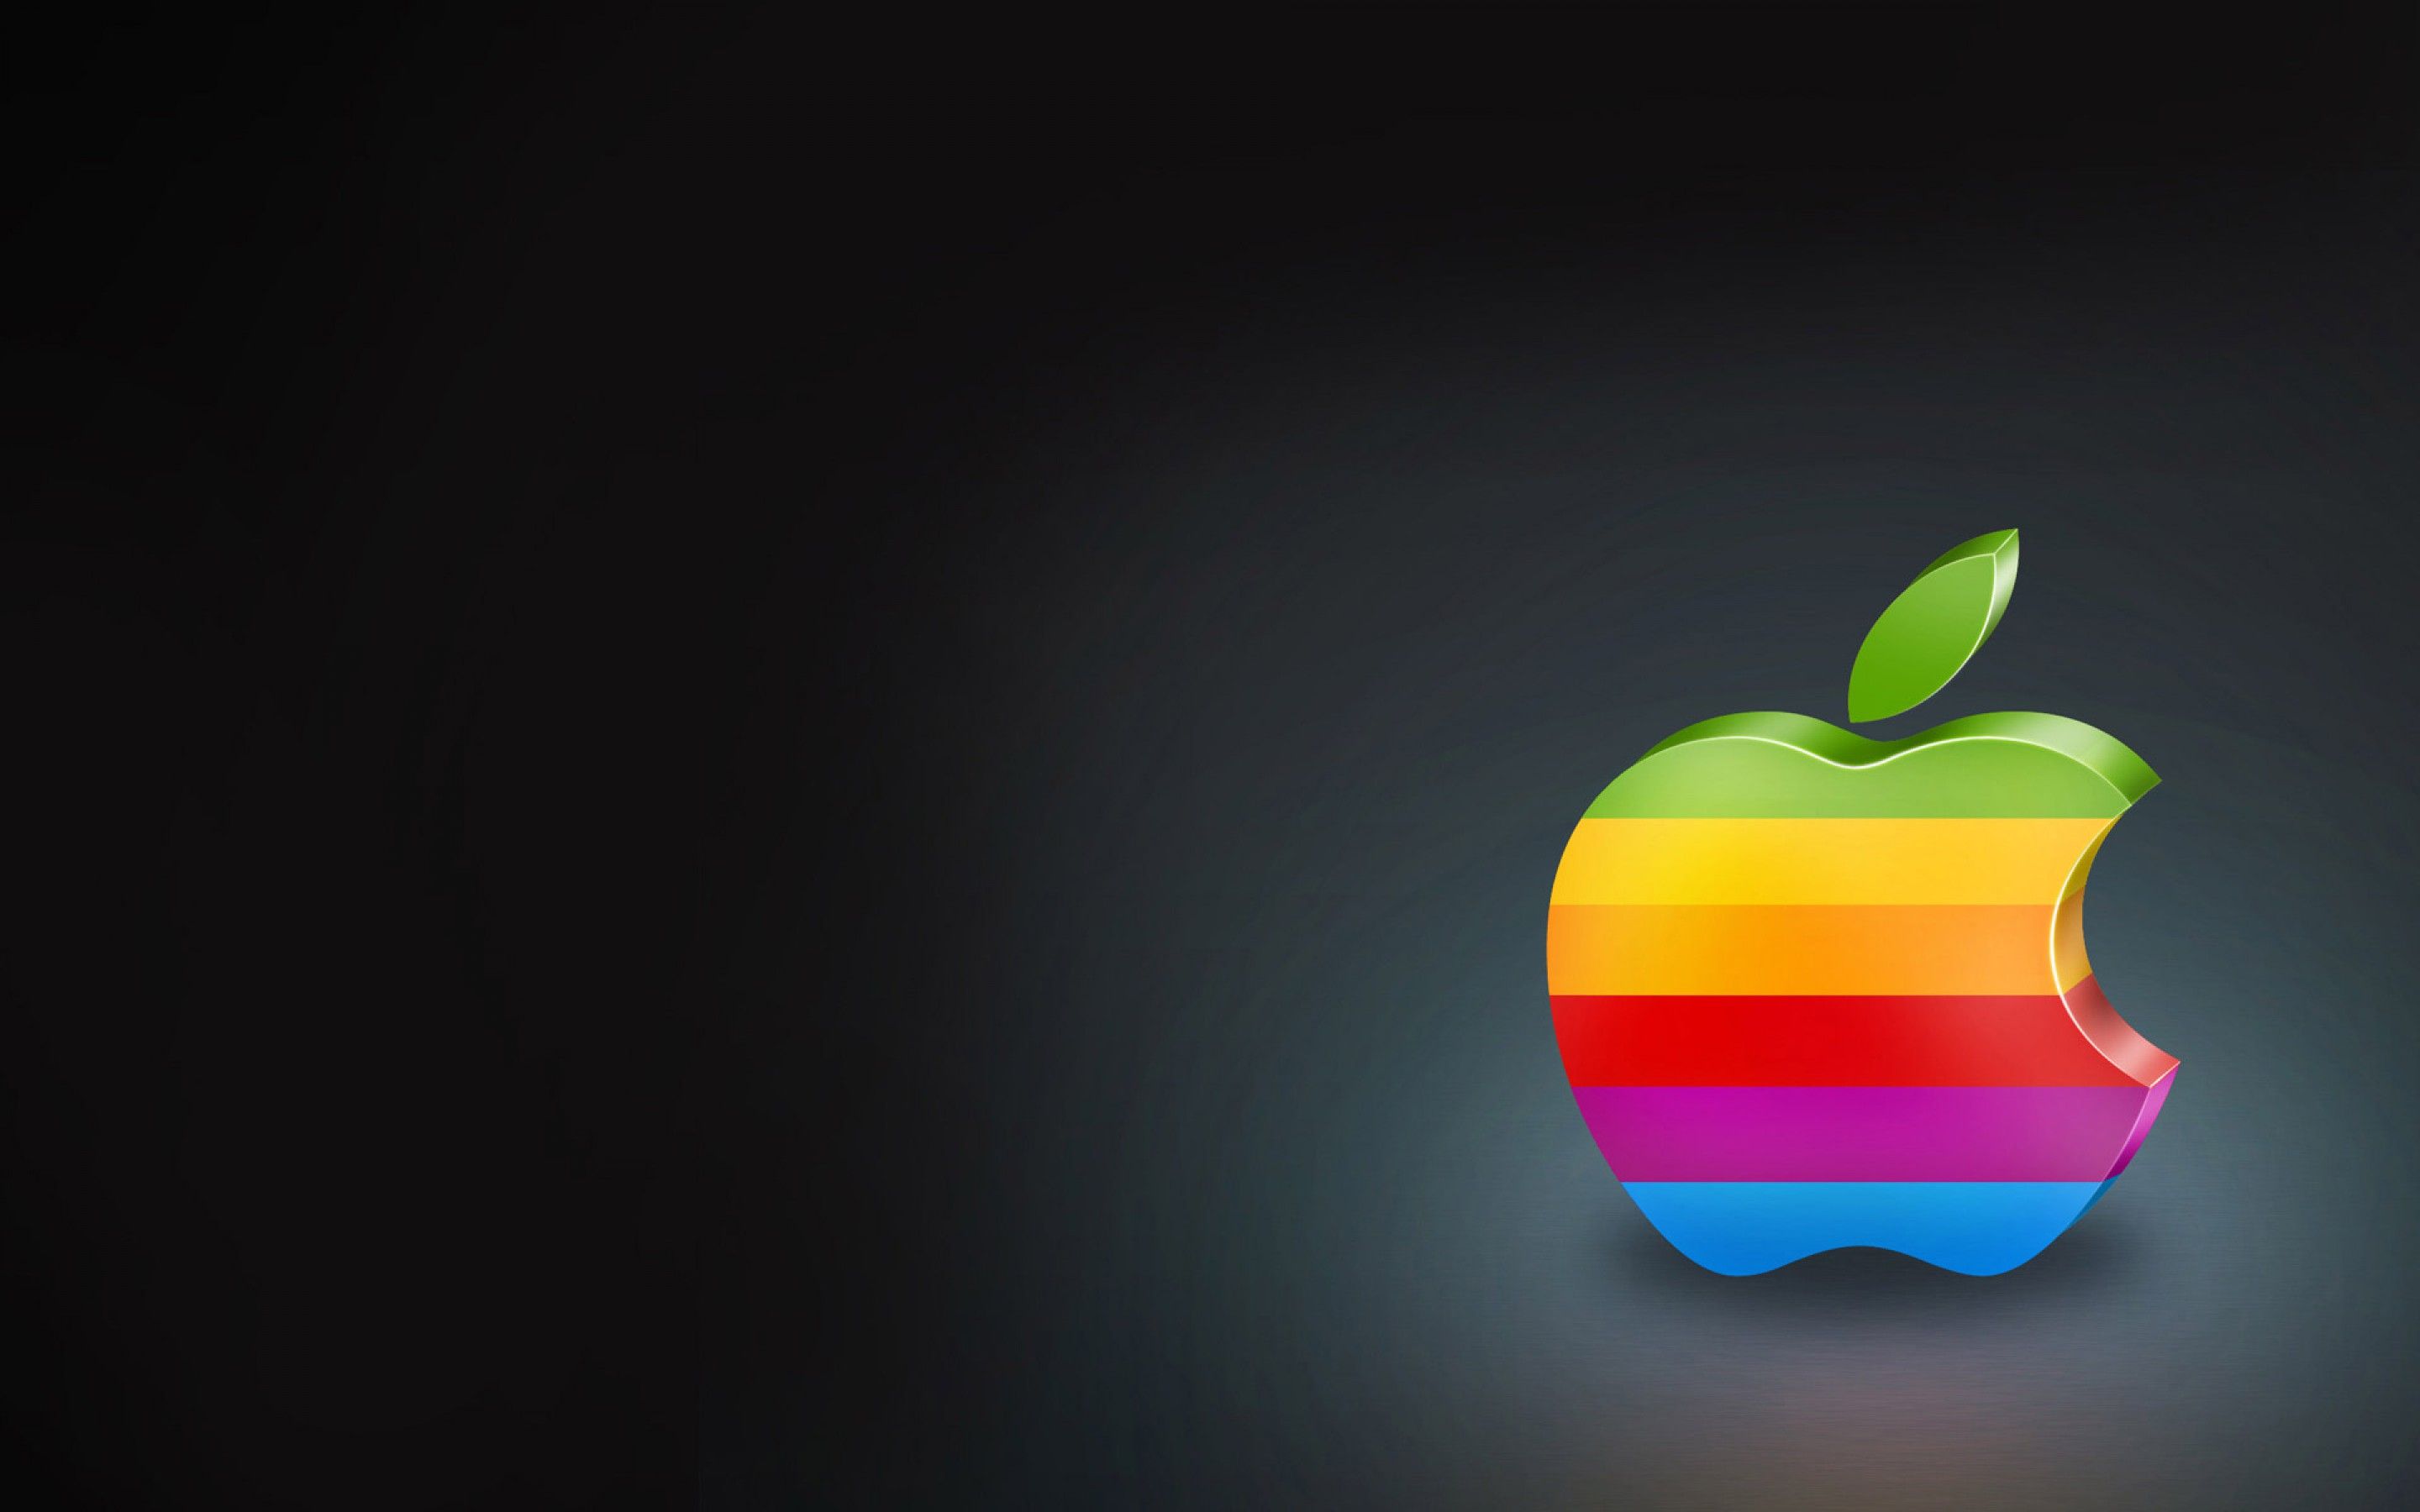 Тик обои на айфон. Логотип Apple. Яблочко Эппл. Яблоко айфон. Фон Apple.